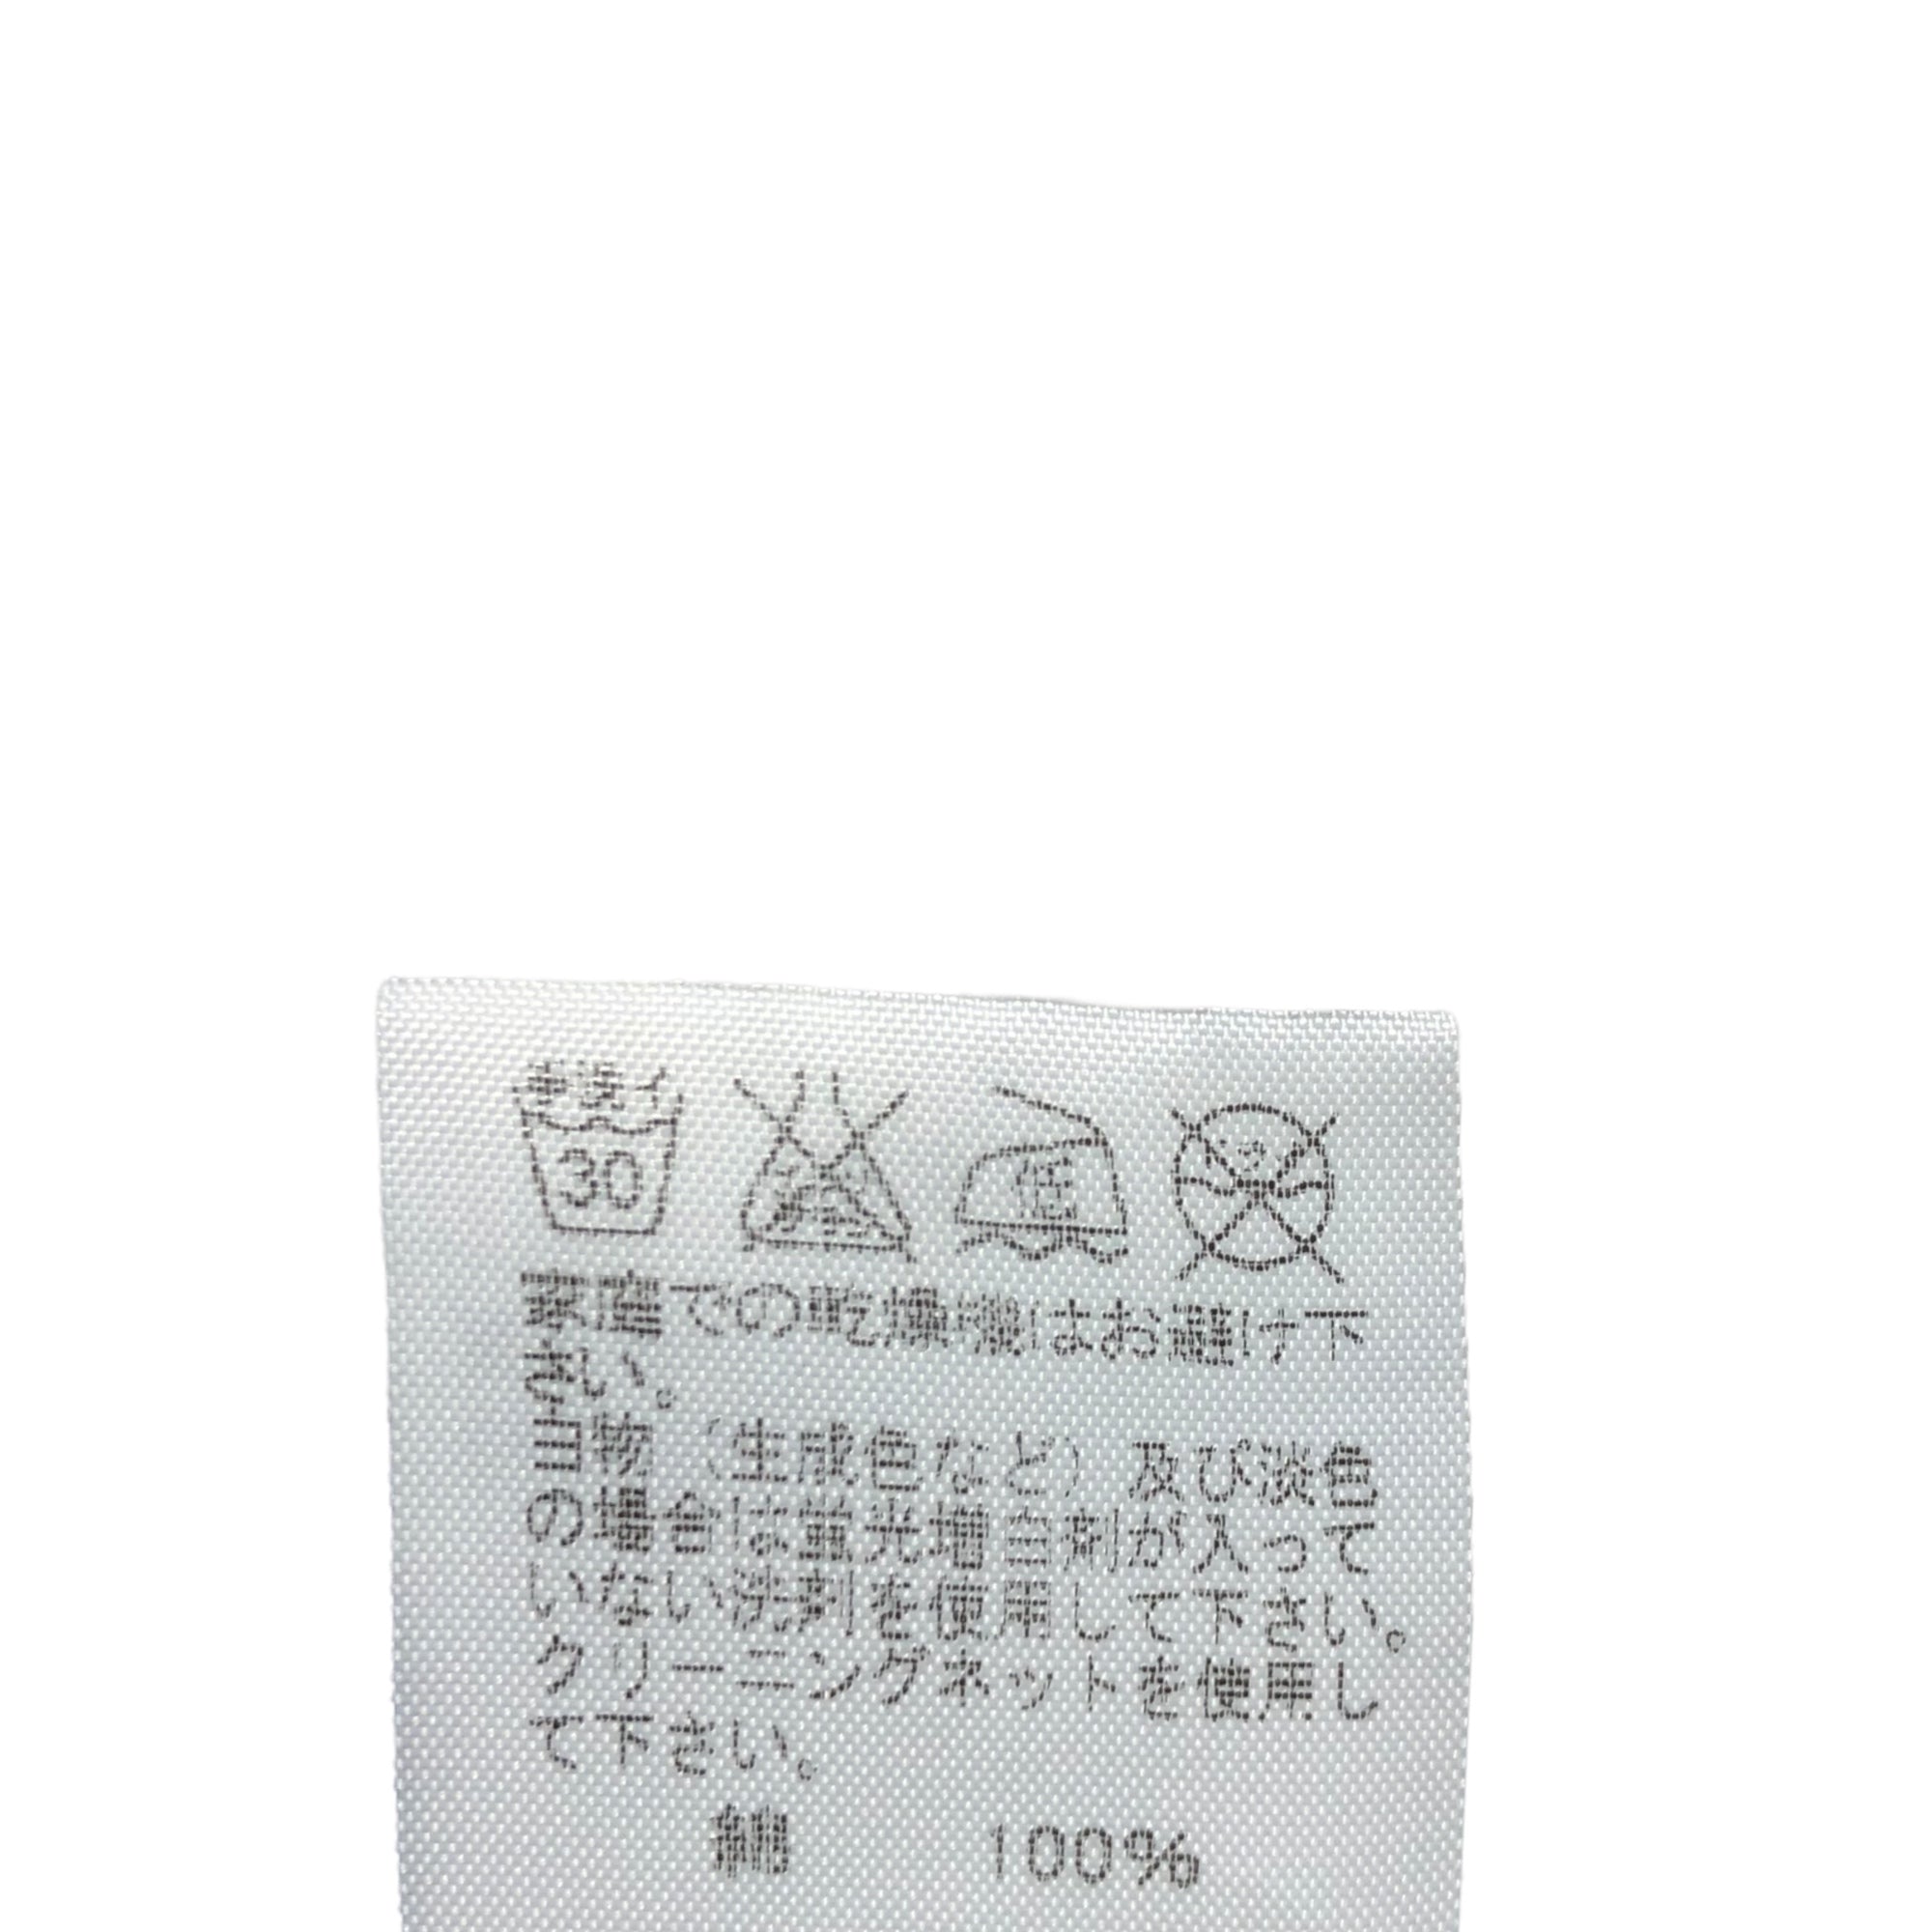 ISSEY MIYAKE(イッセイミヤケ) 93's polish message flare cropped pants/ポーランド語メッセージフレアクロップドパンツ IM31FF049 SIZE 2(M) ホワイト×ブラック